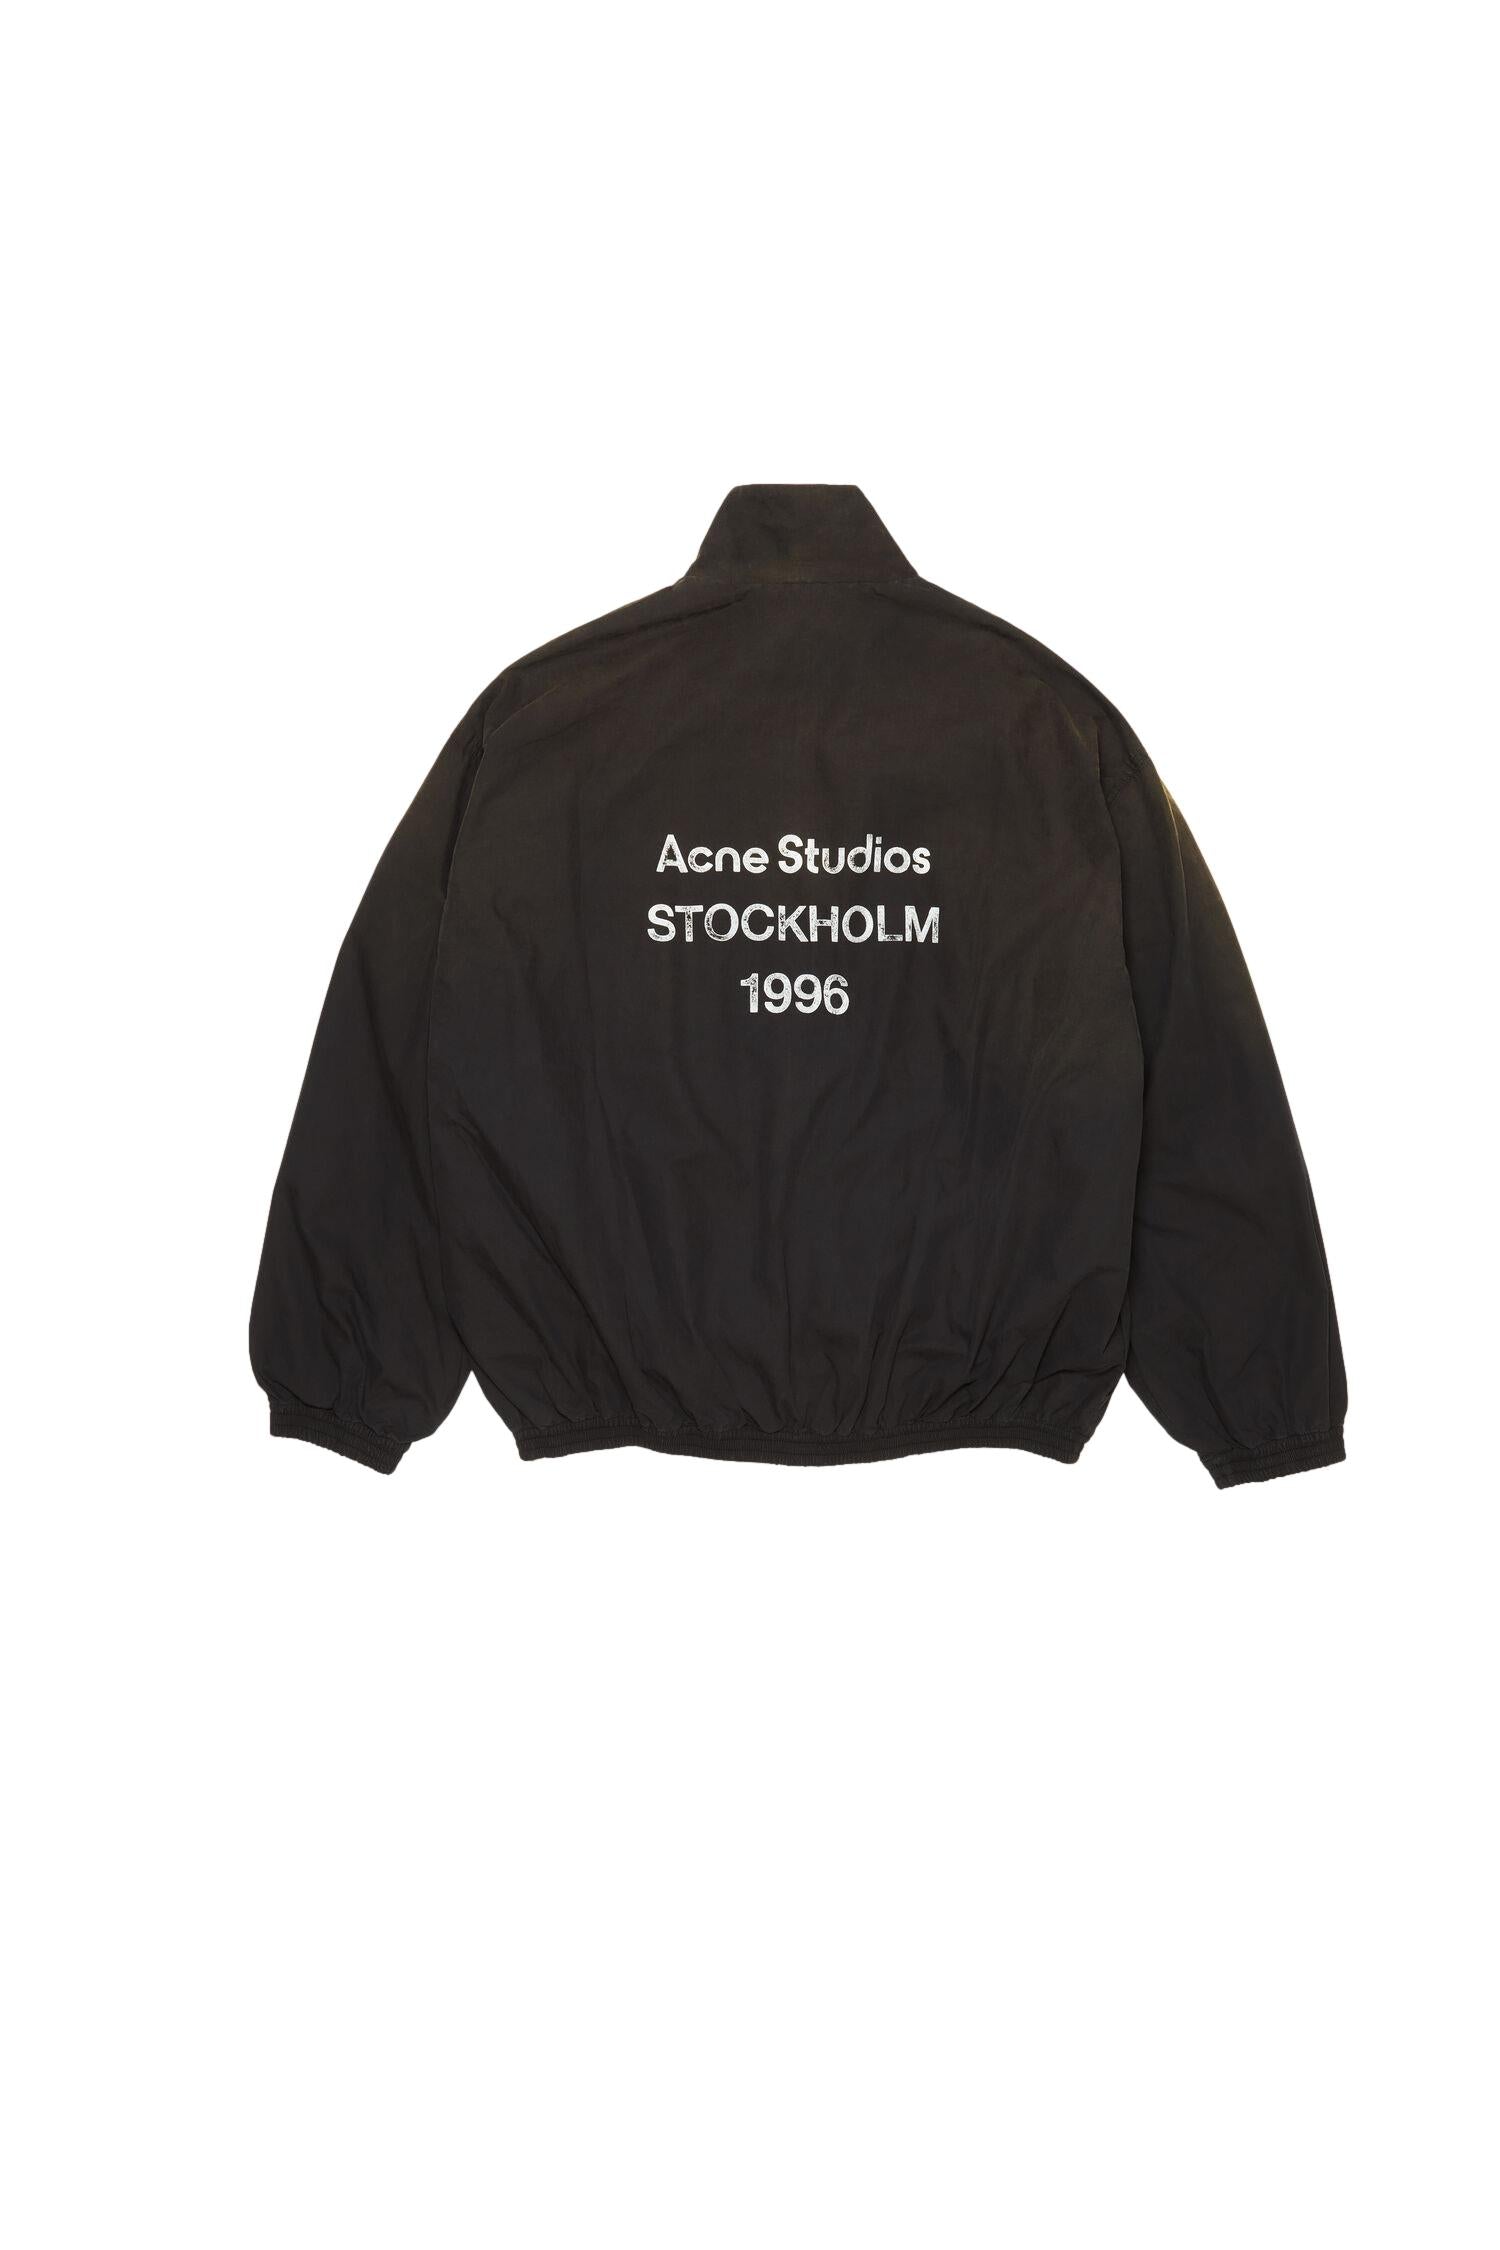 Acne Logo Zipper Jacket Jakke Sort